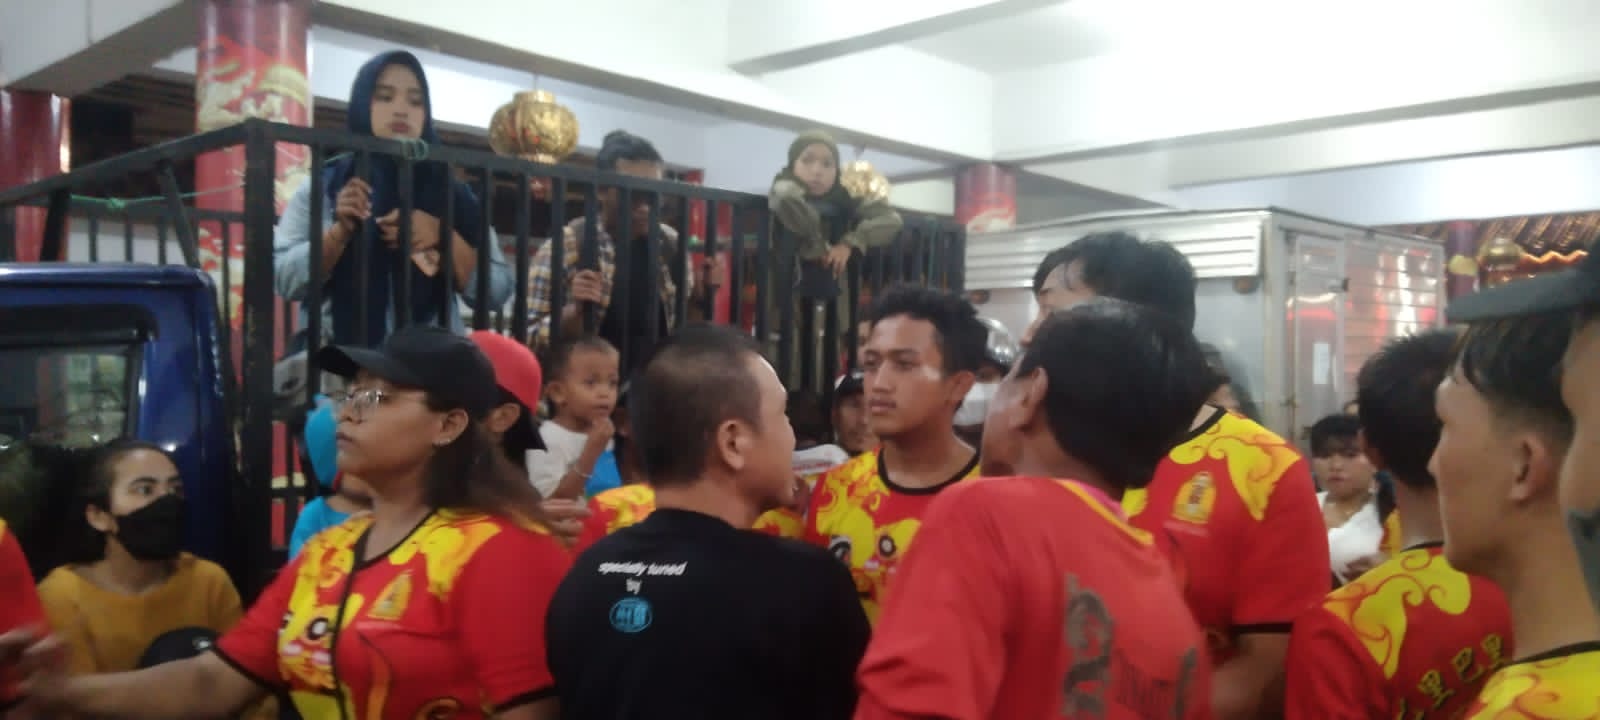 Terjadi keributan antar pemain barongsai di Festival Jappa Jokka. (Foto: M Aswar/Rakyat.news)